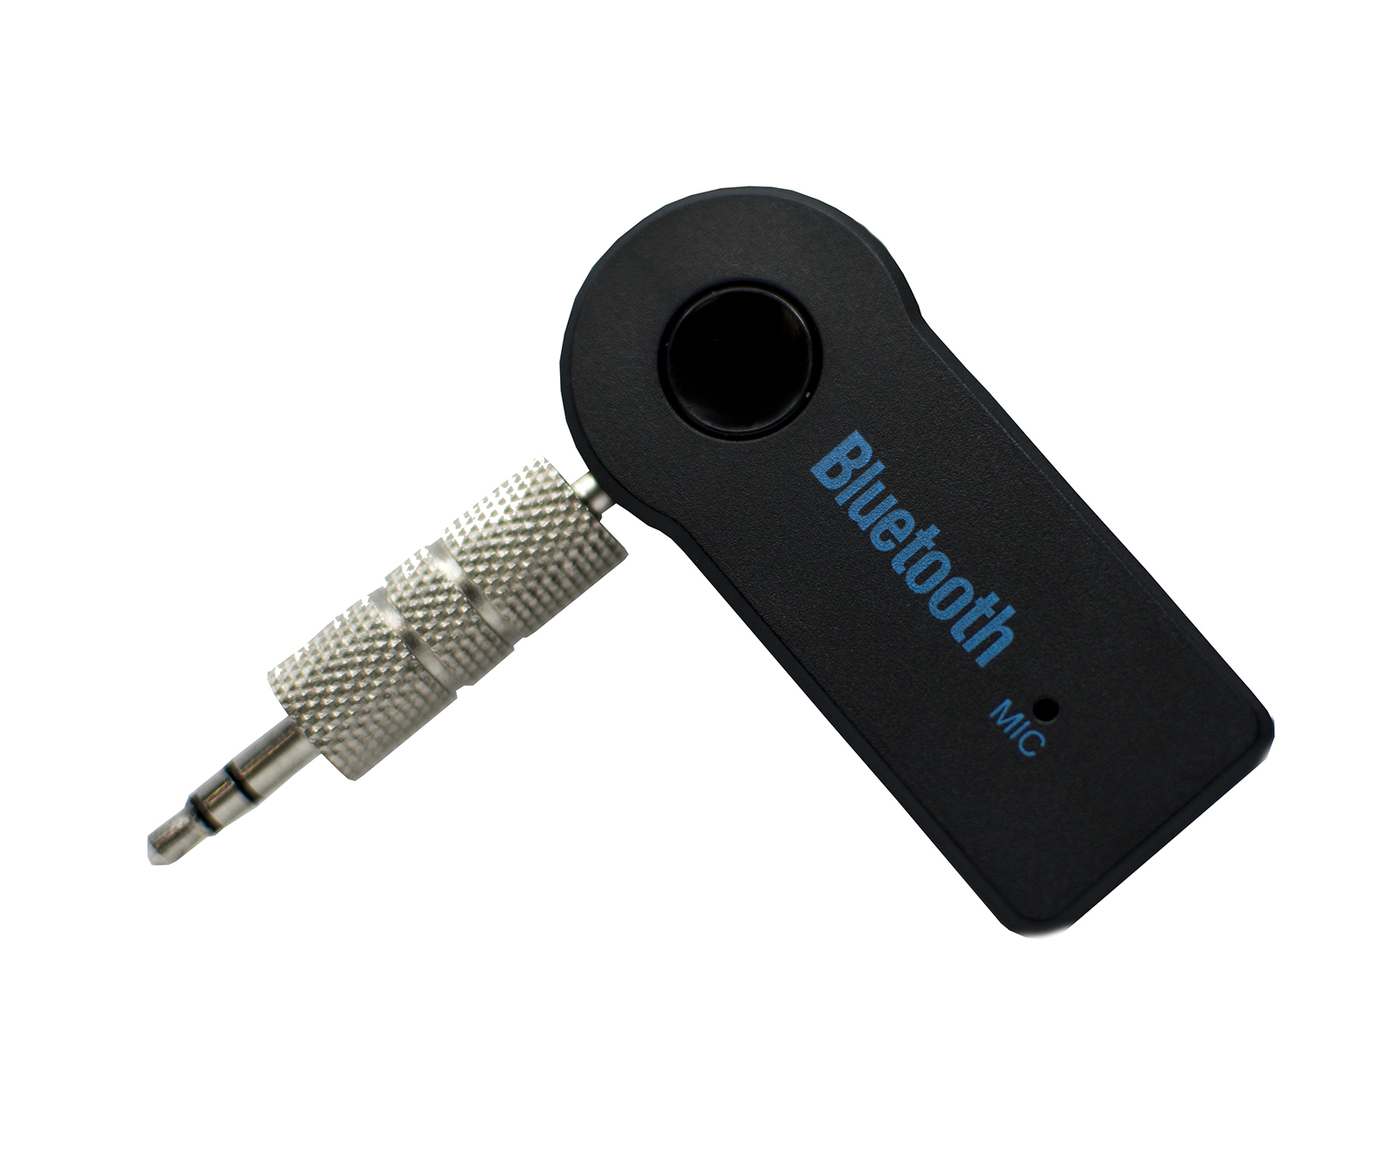 Bluetooth Transmitter Empfänger PC Kopfhörer Tragbarer kabelloser Bluetooth Receiver 2 in 1 Adapter 3,5mm Audio Geräte für TV Heim Stereoanlage und Auto Soundsysteme etc 